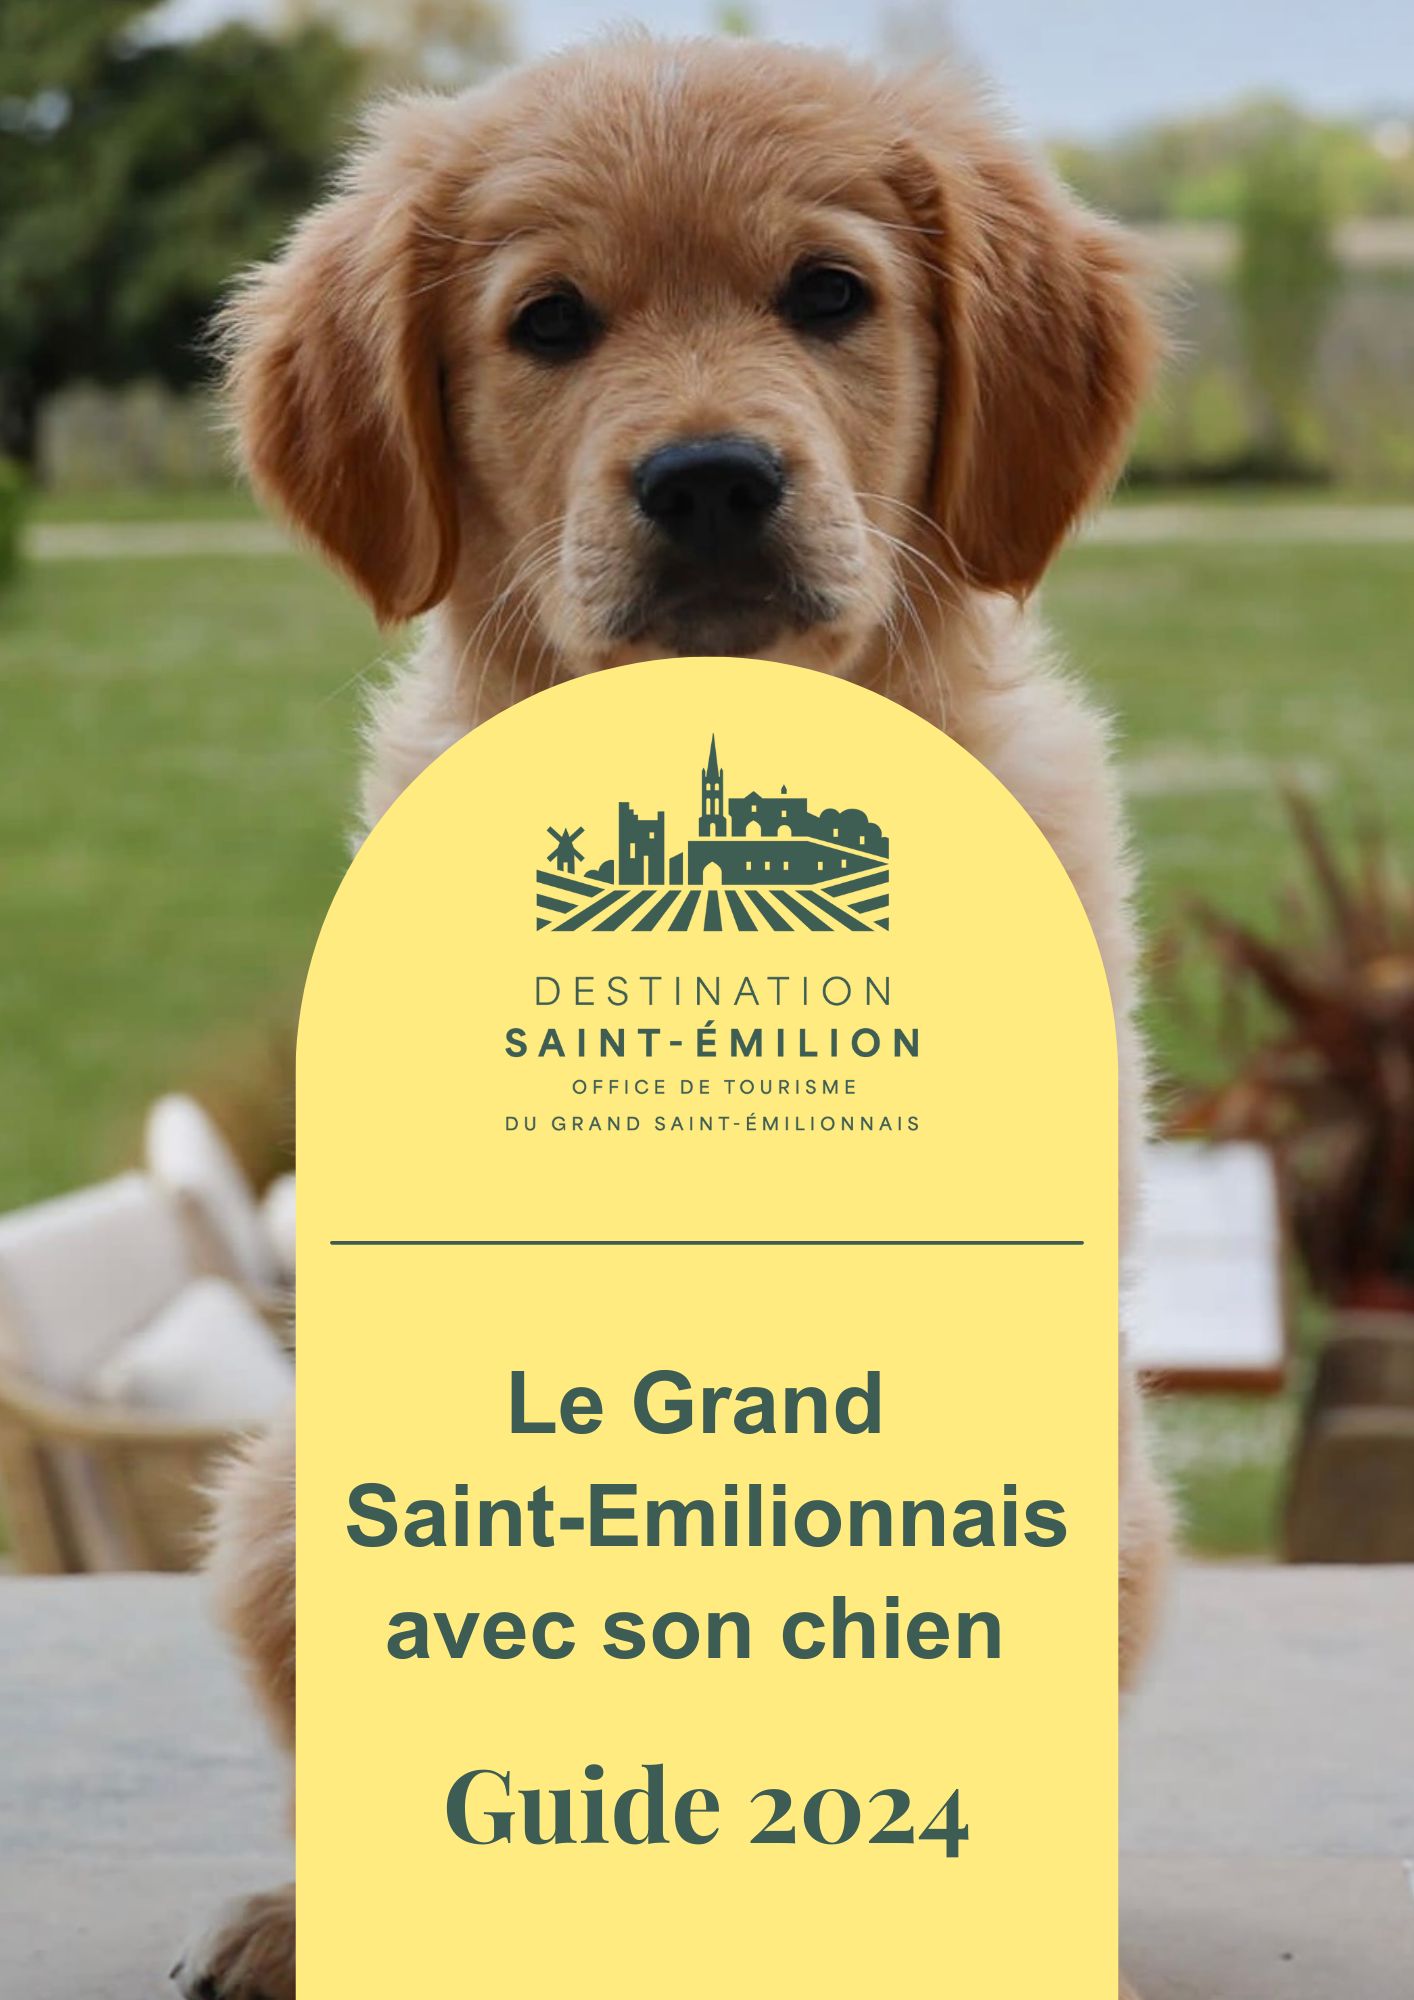 Guide 2024 - Le Grand Saint-Emilionnais avec son chien